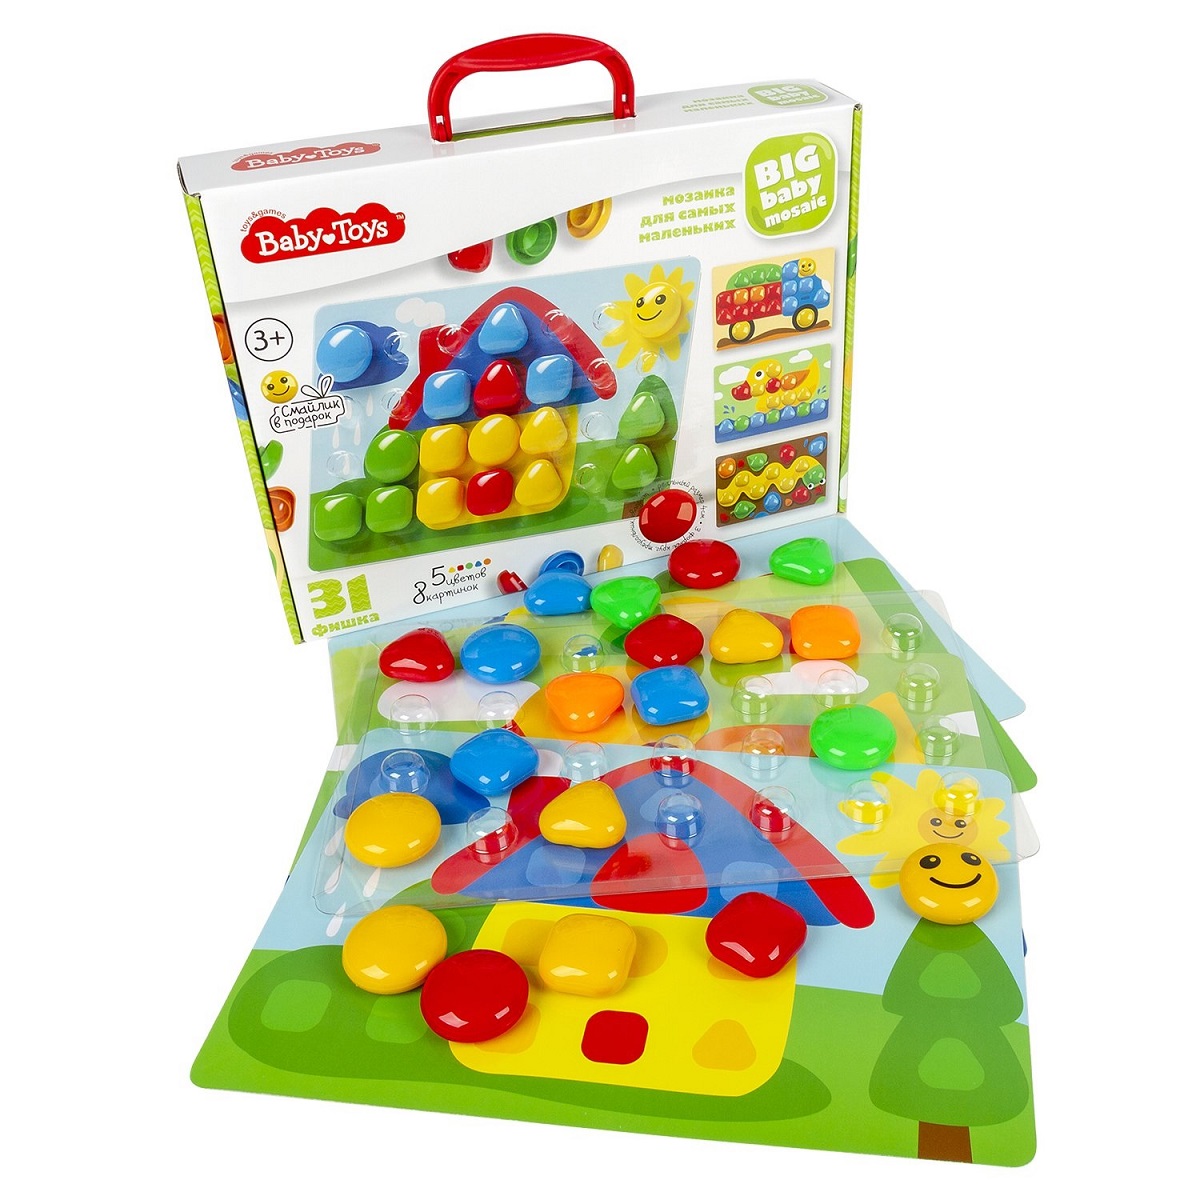 Мозаика для самых маленьких – Baby Toys, диаметр детали 4 см, 5 цветов, 31 элемент  